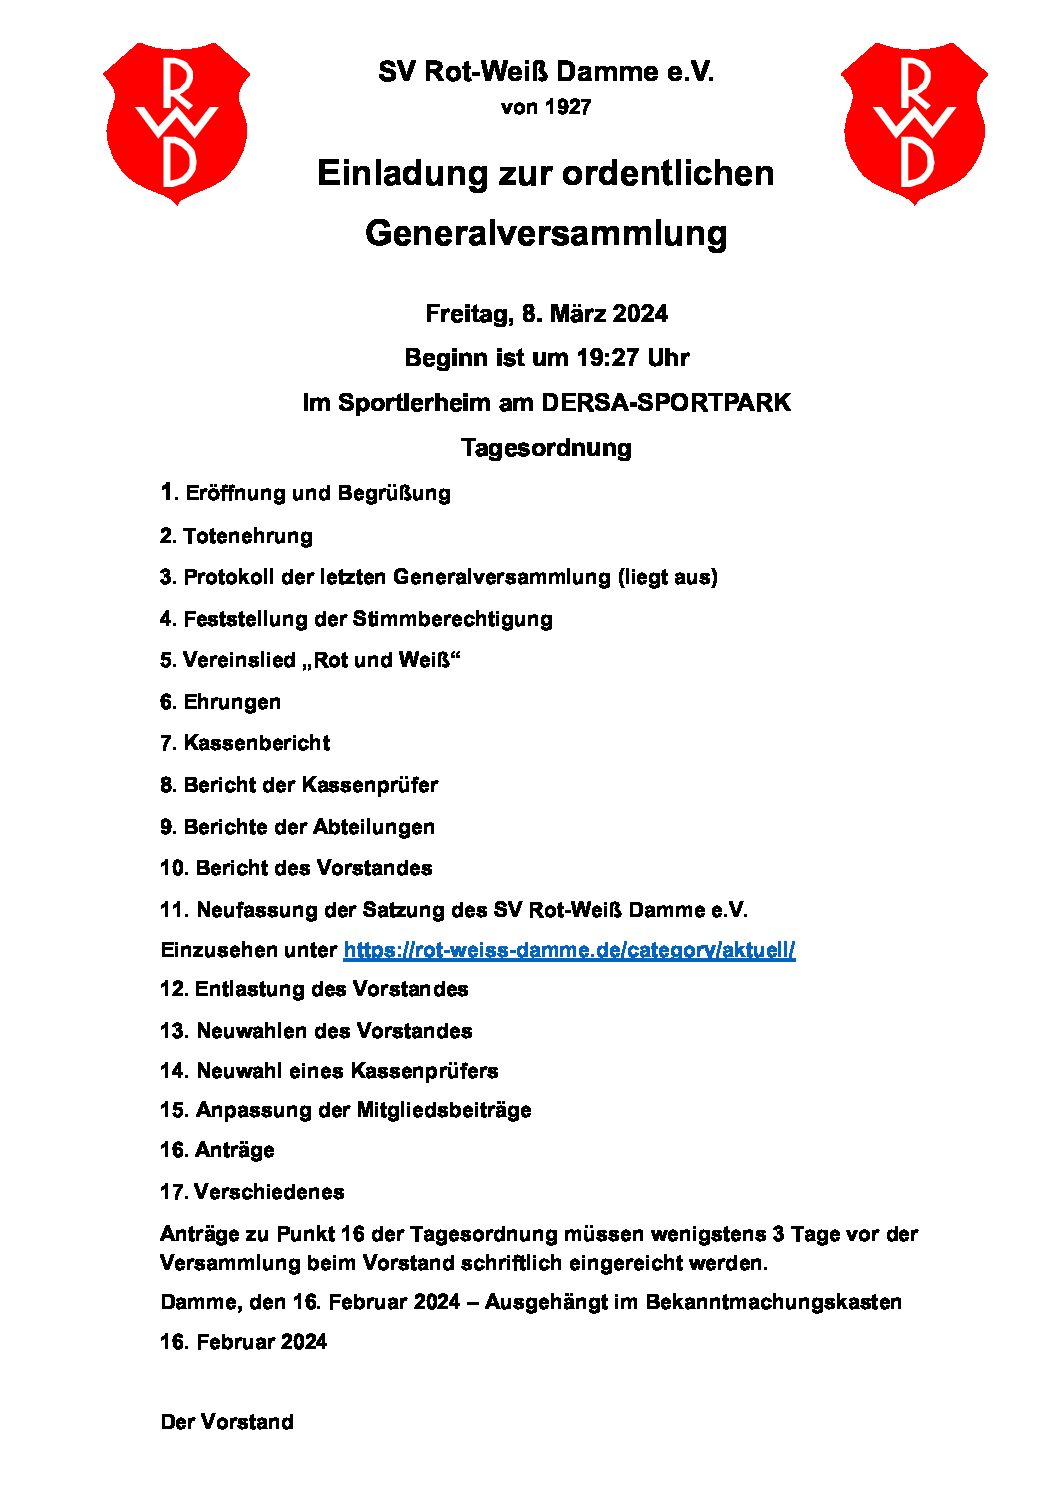 Einladung zur Generalversammlung von Rot-Weiß Damme e.V.